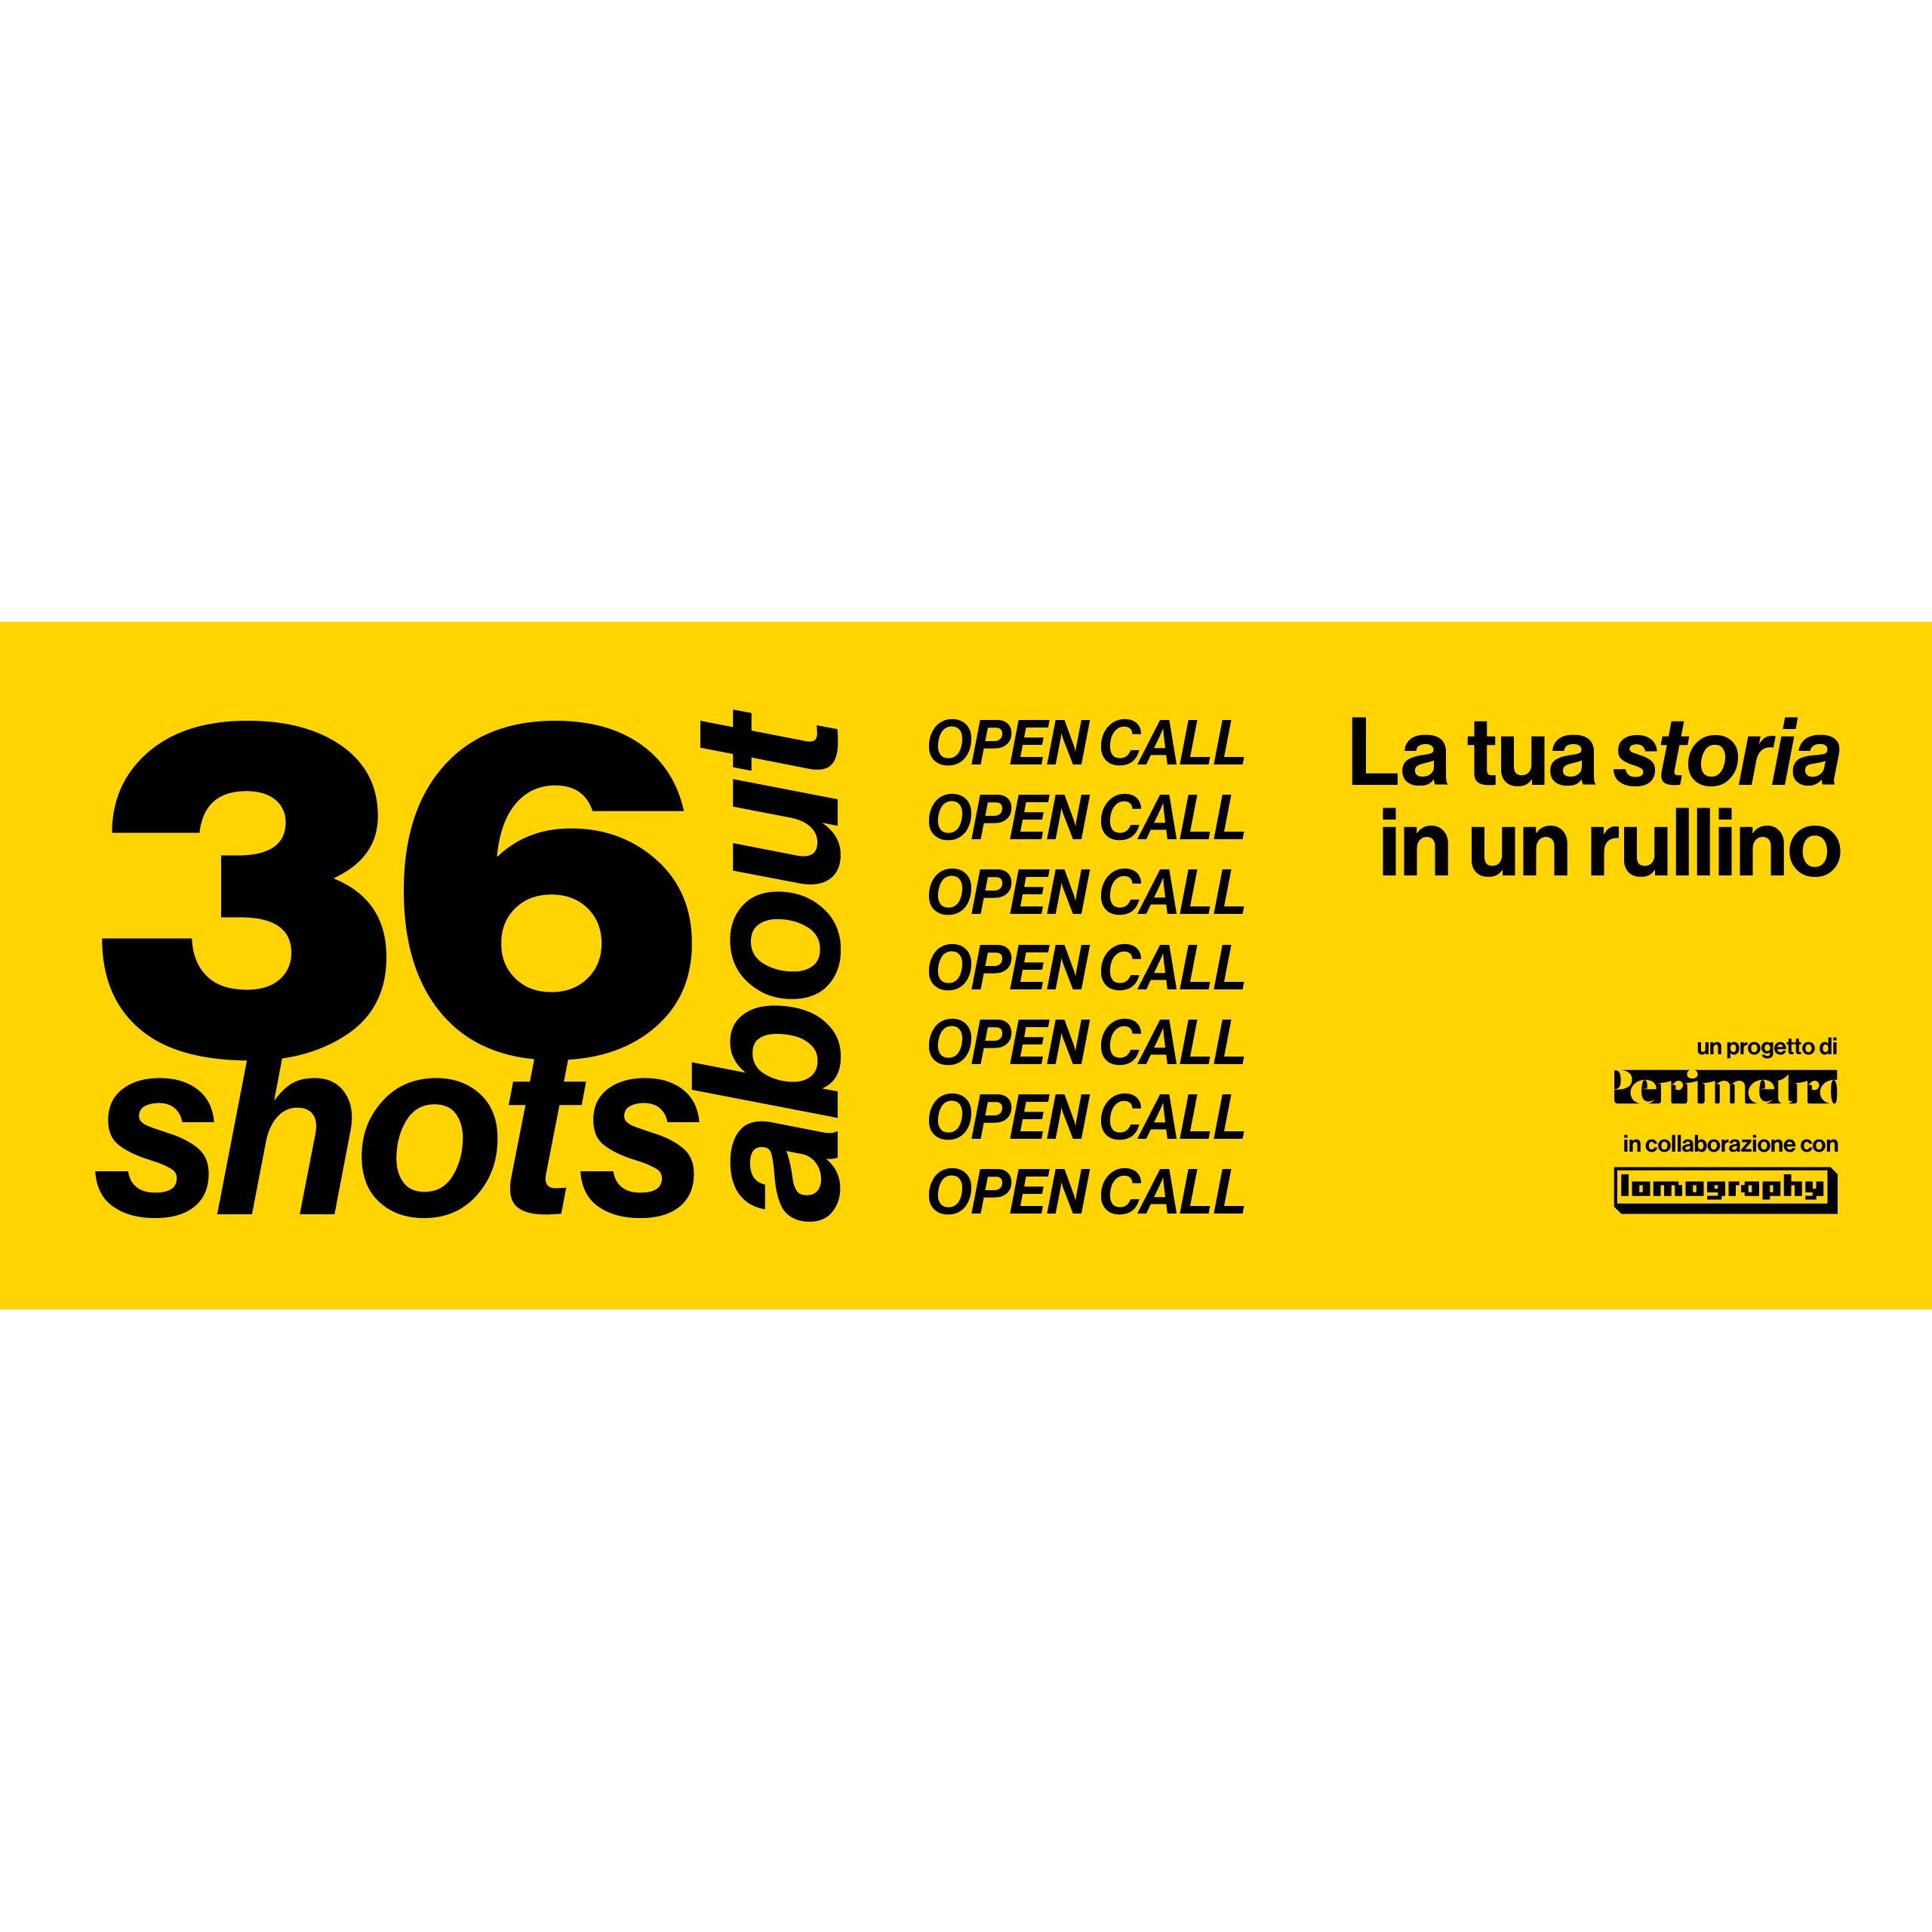 36 Shots About - La Tua Storia in un Rullino, Open Call Gratuita